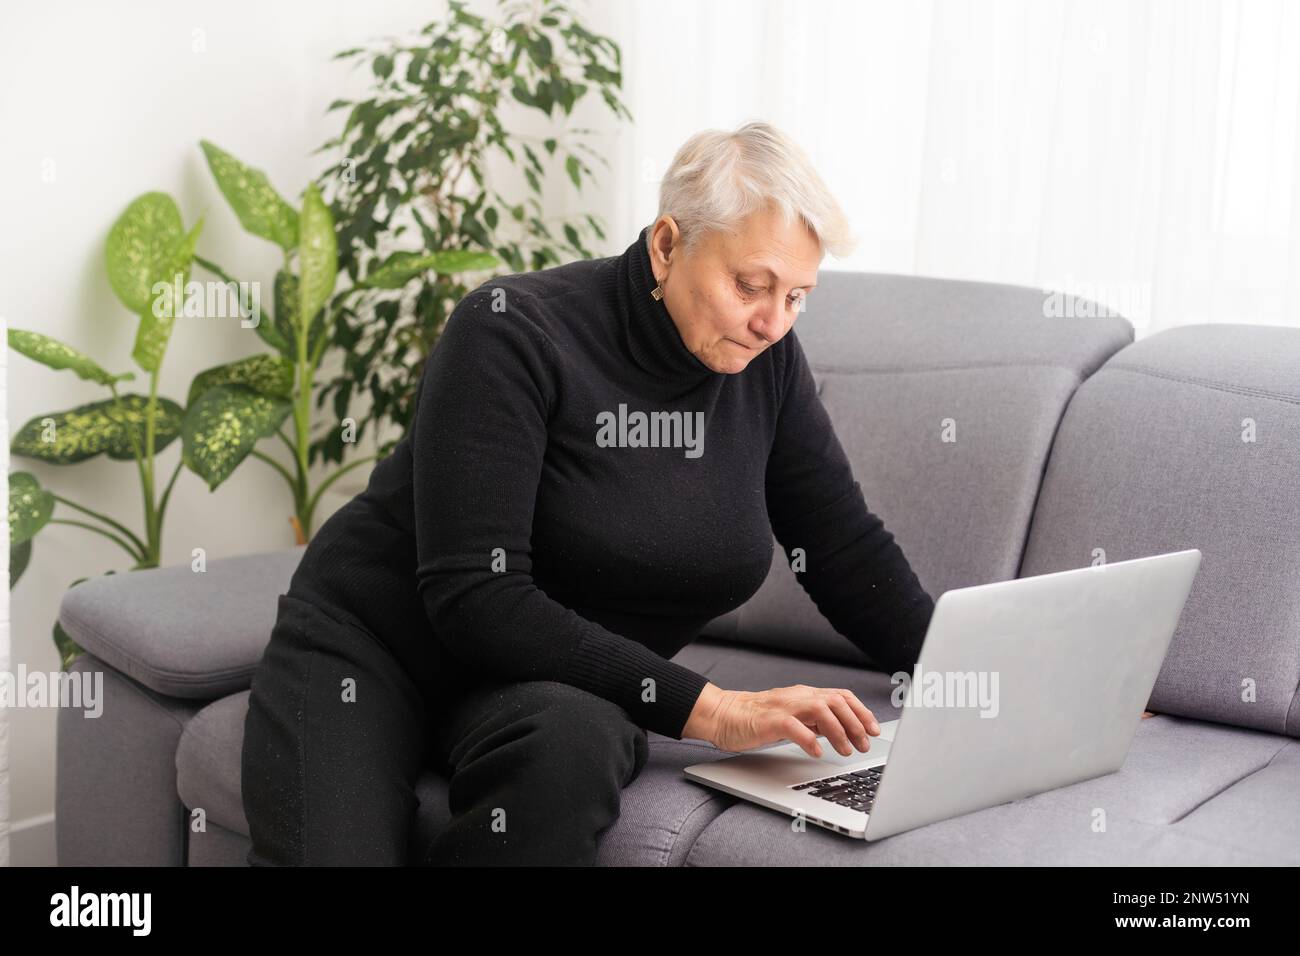 Vue avant concentrée agréable mature femme âgée regardant l'écran d'ordinateur. Bonne dame d'âge moyen surfer sur le Web, commander de la nourriture en ligne Banque D'Images